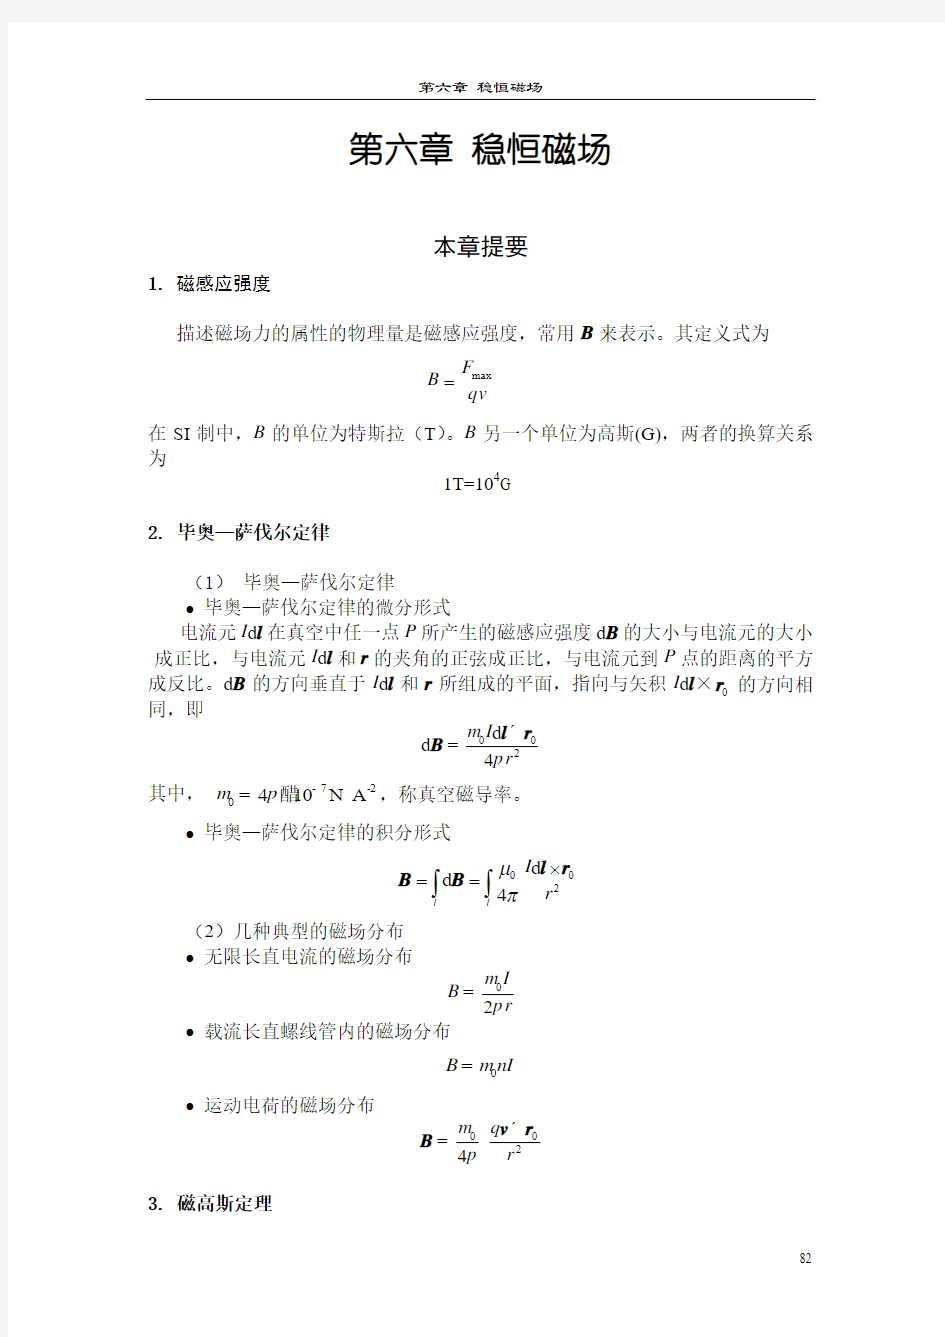 大学基础物理学答案(习岗)第6章